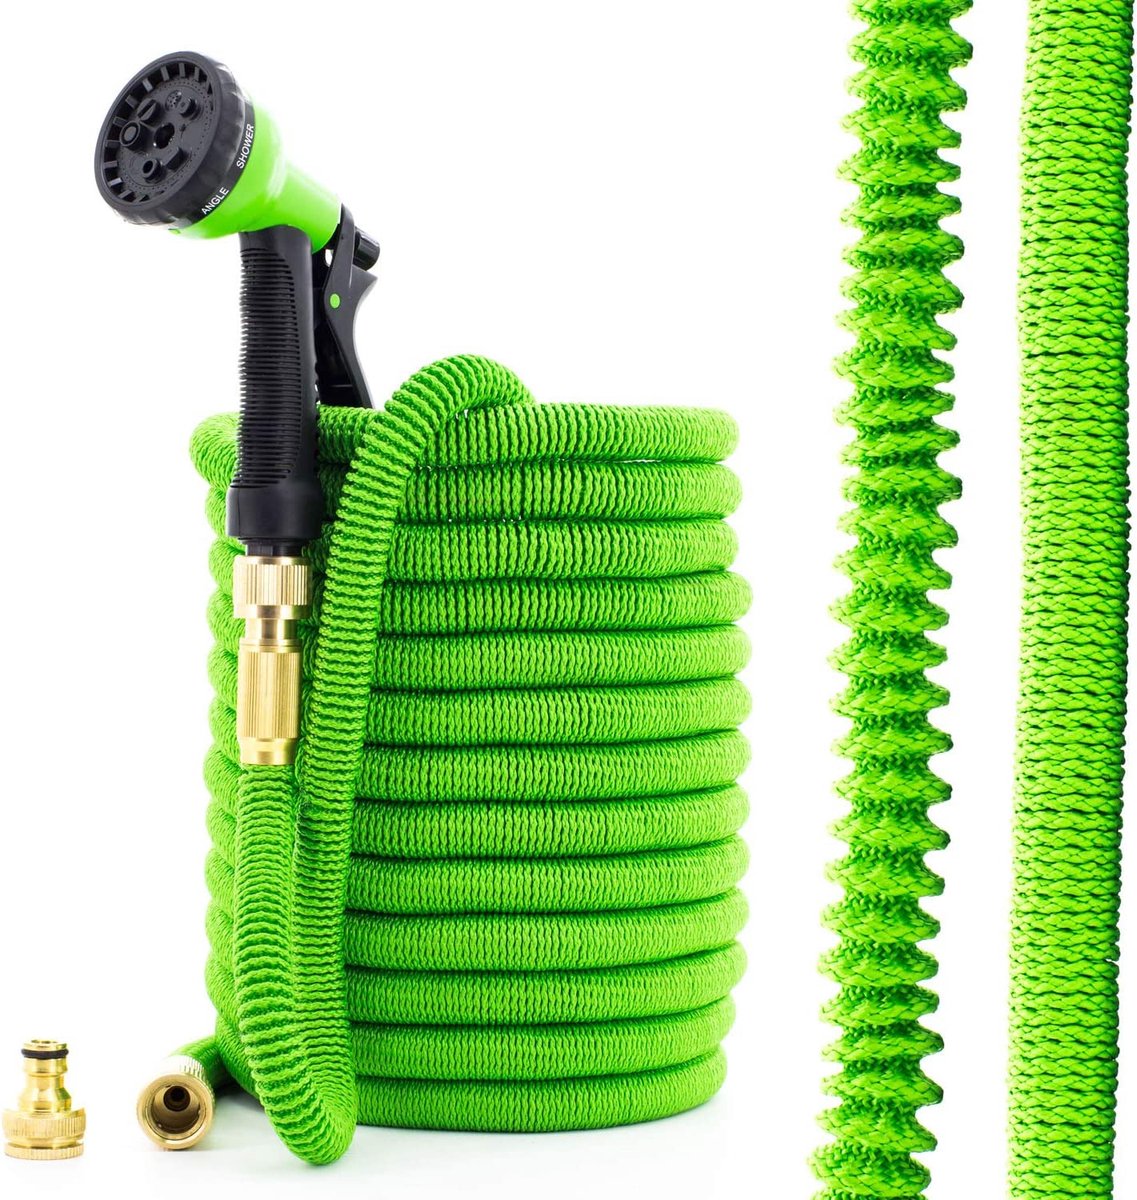 Tuinslang – flexible – tuin slang – flexible garden hose - duurzaam